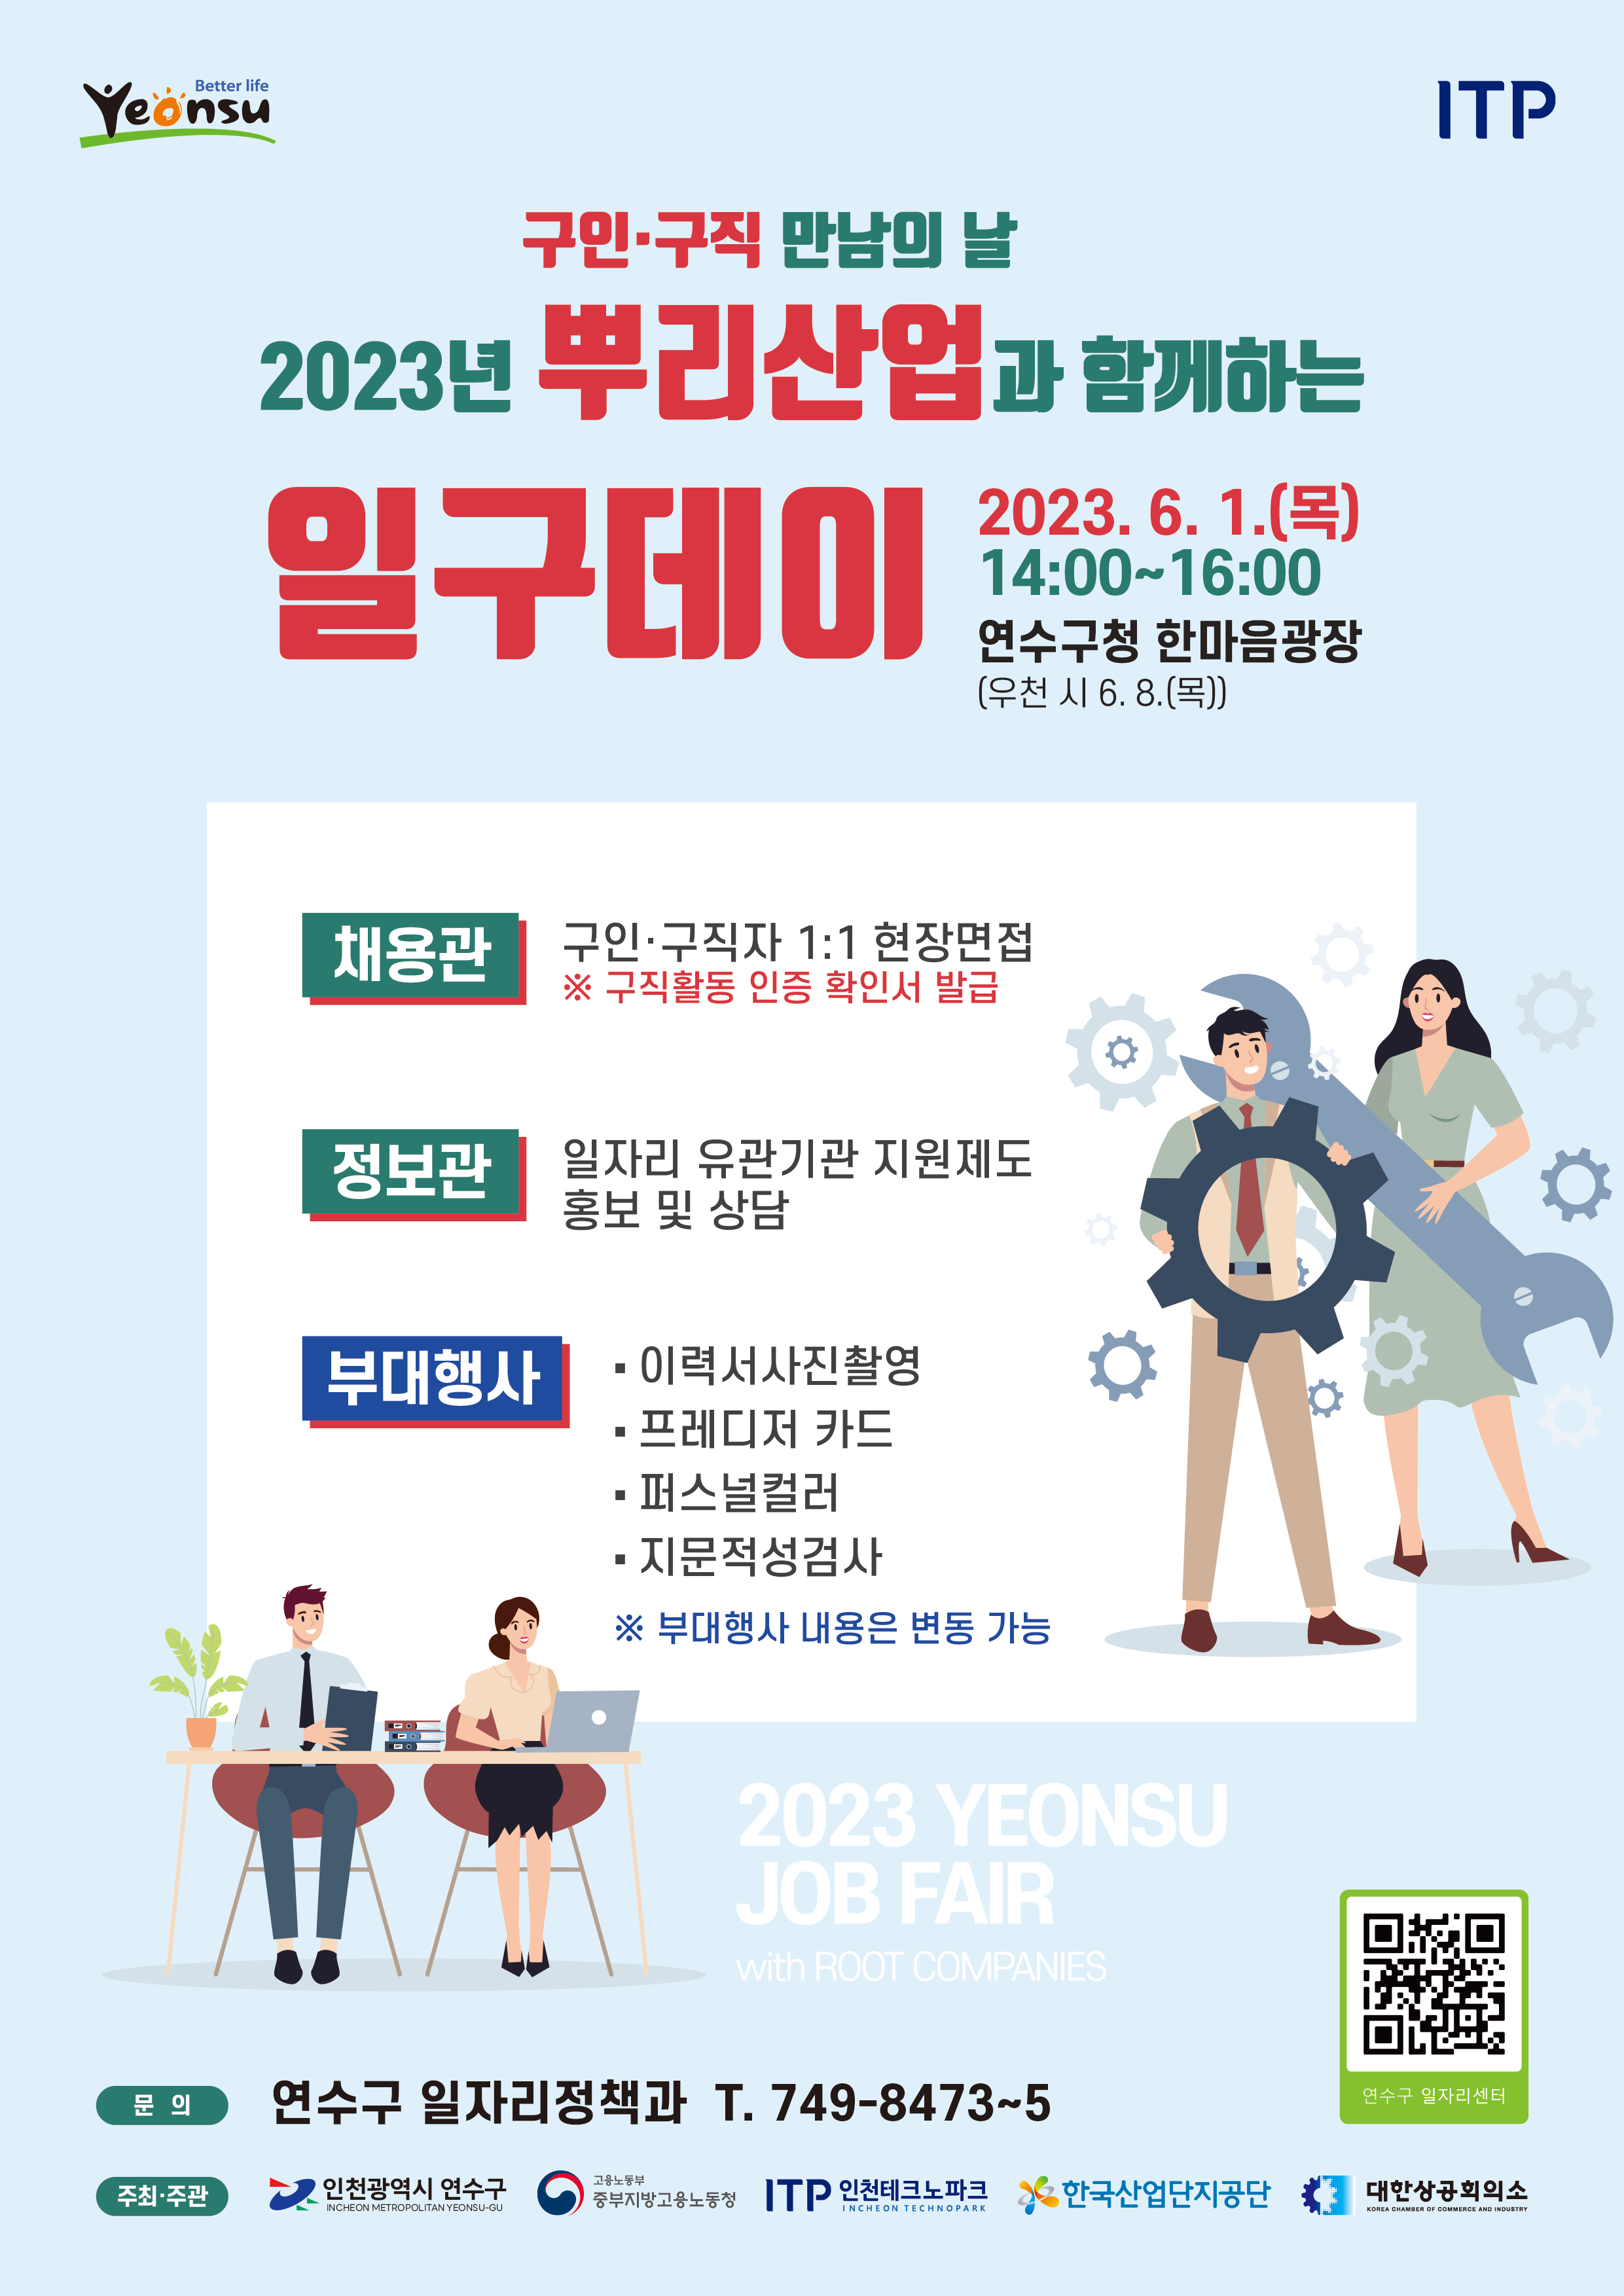 2023년 『 뿌리산업과 함께하는 일구데이 』 개최 안내의 2번째 이미지